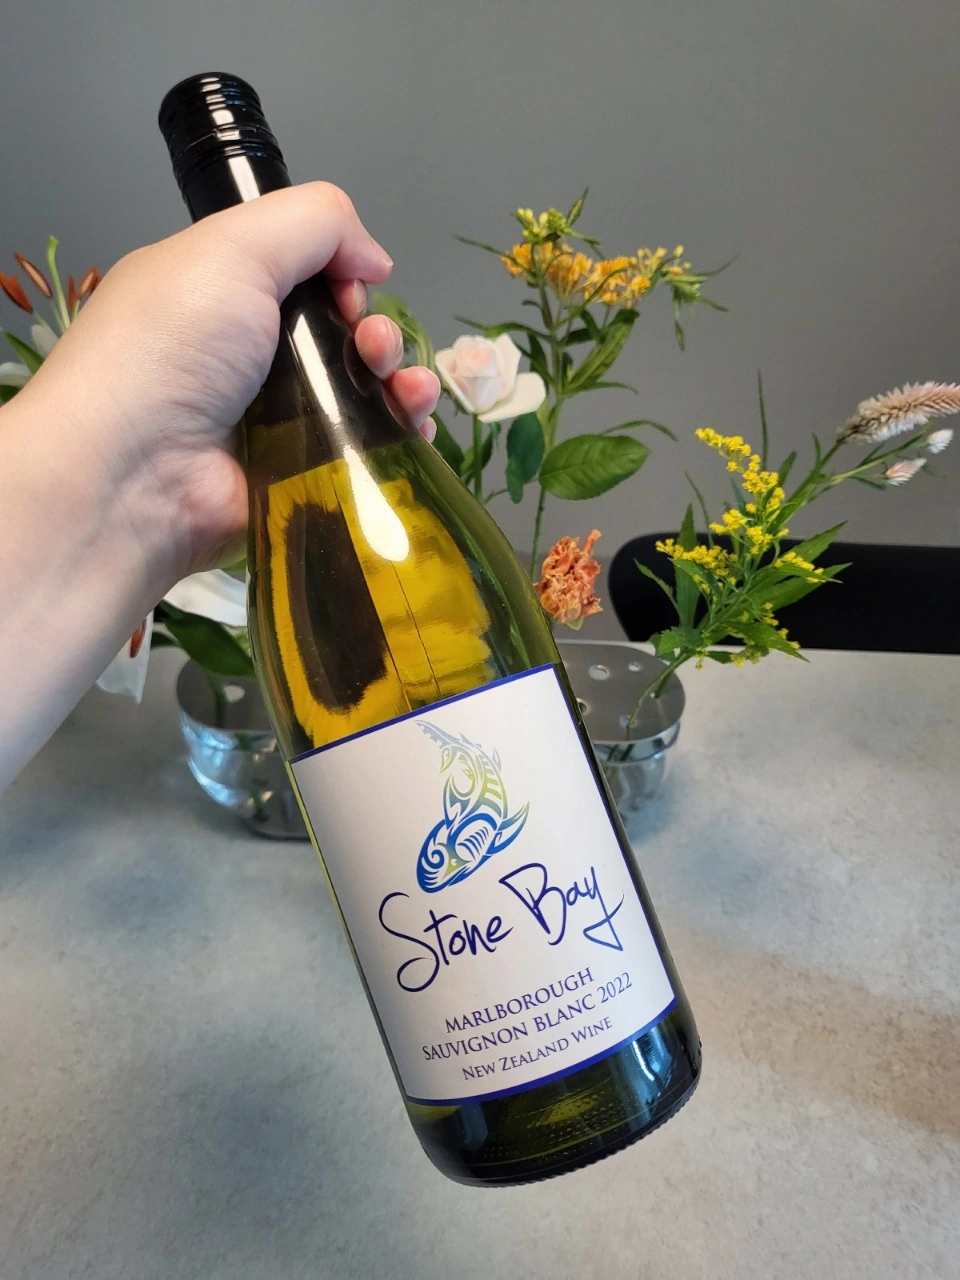 스톤베이 소비뇽블랑(Stone Bay Sauvignon Blanc) 와인 라벨